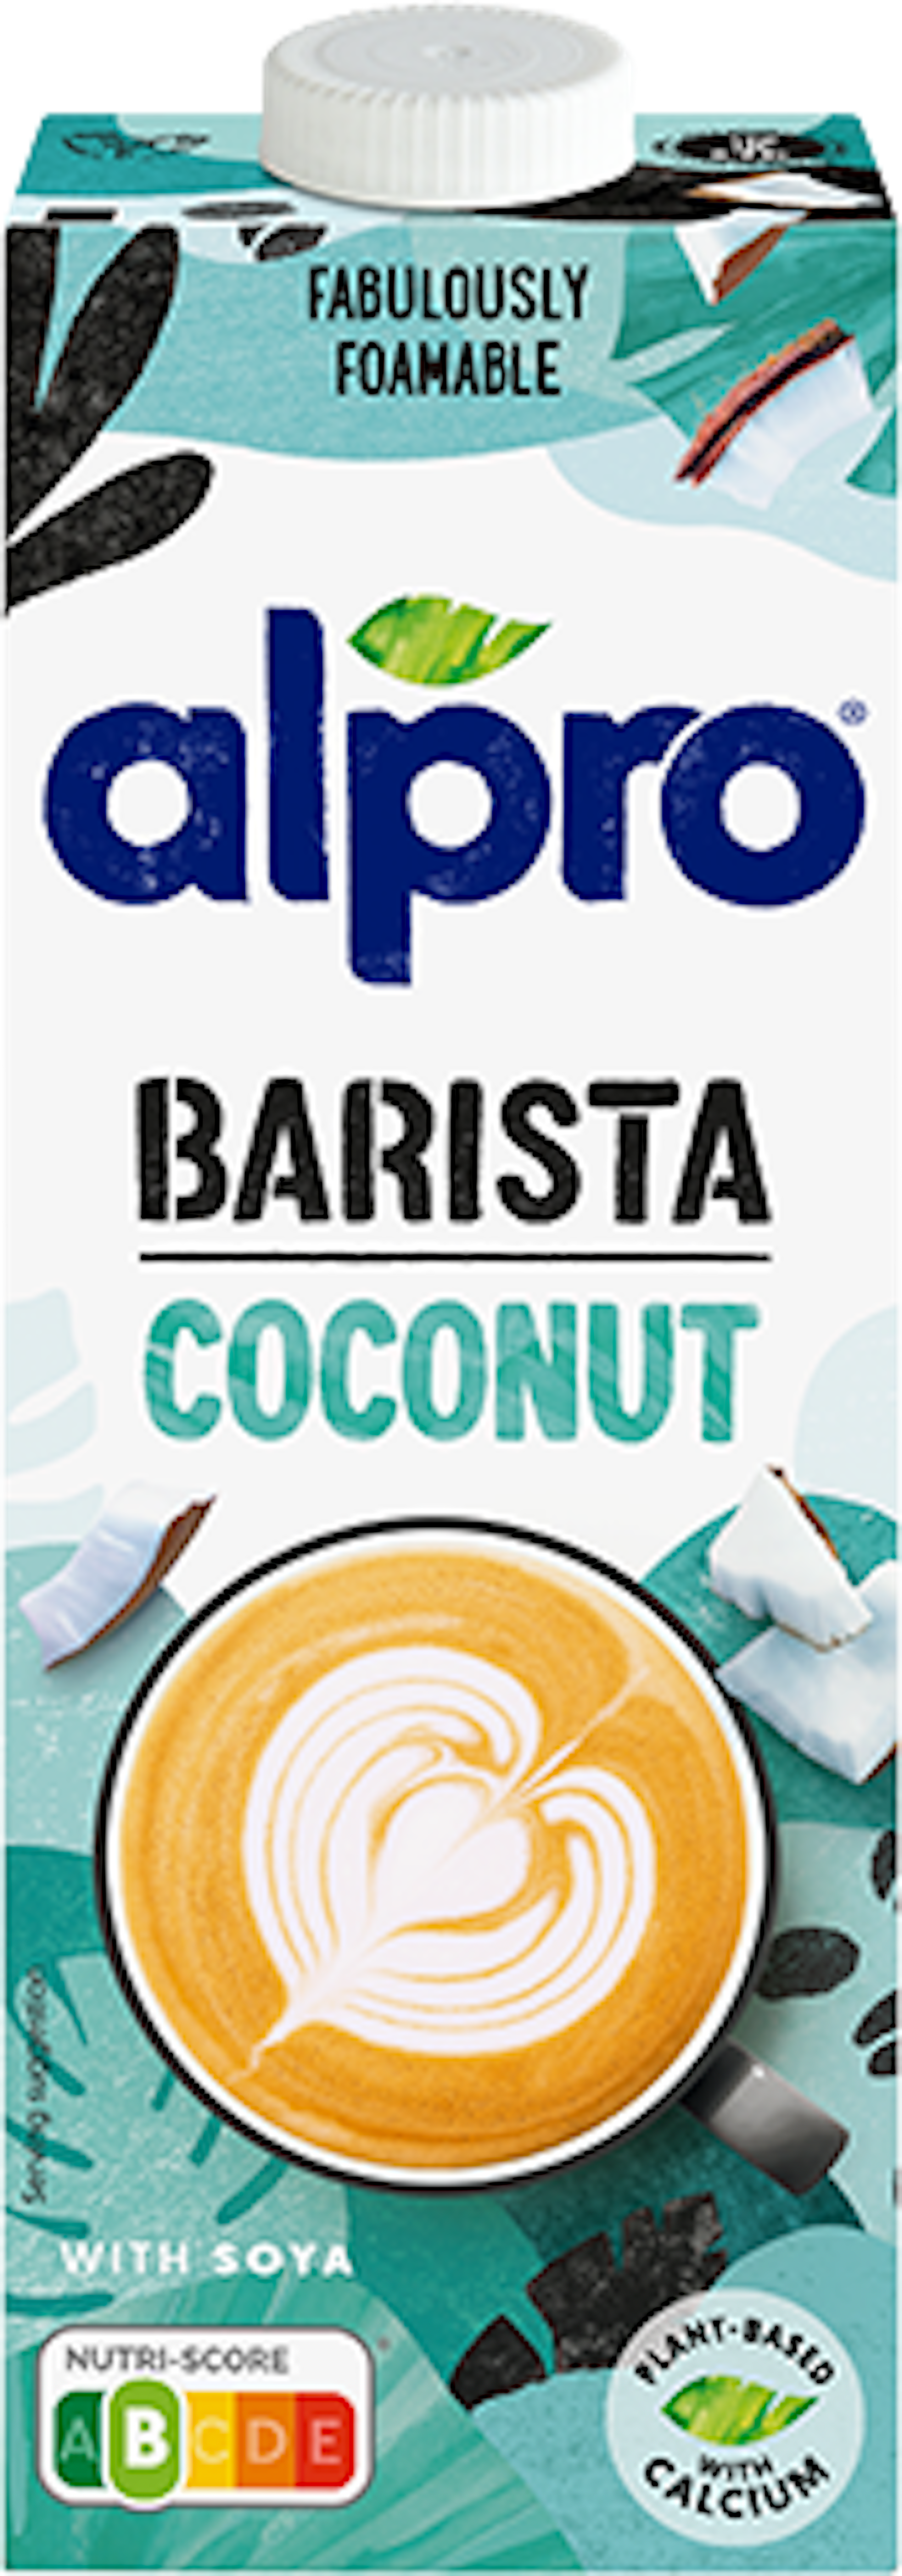 Coconut Barista